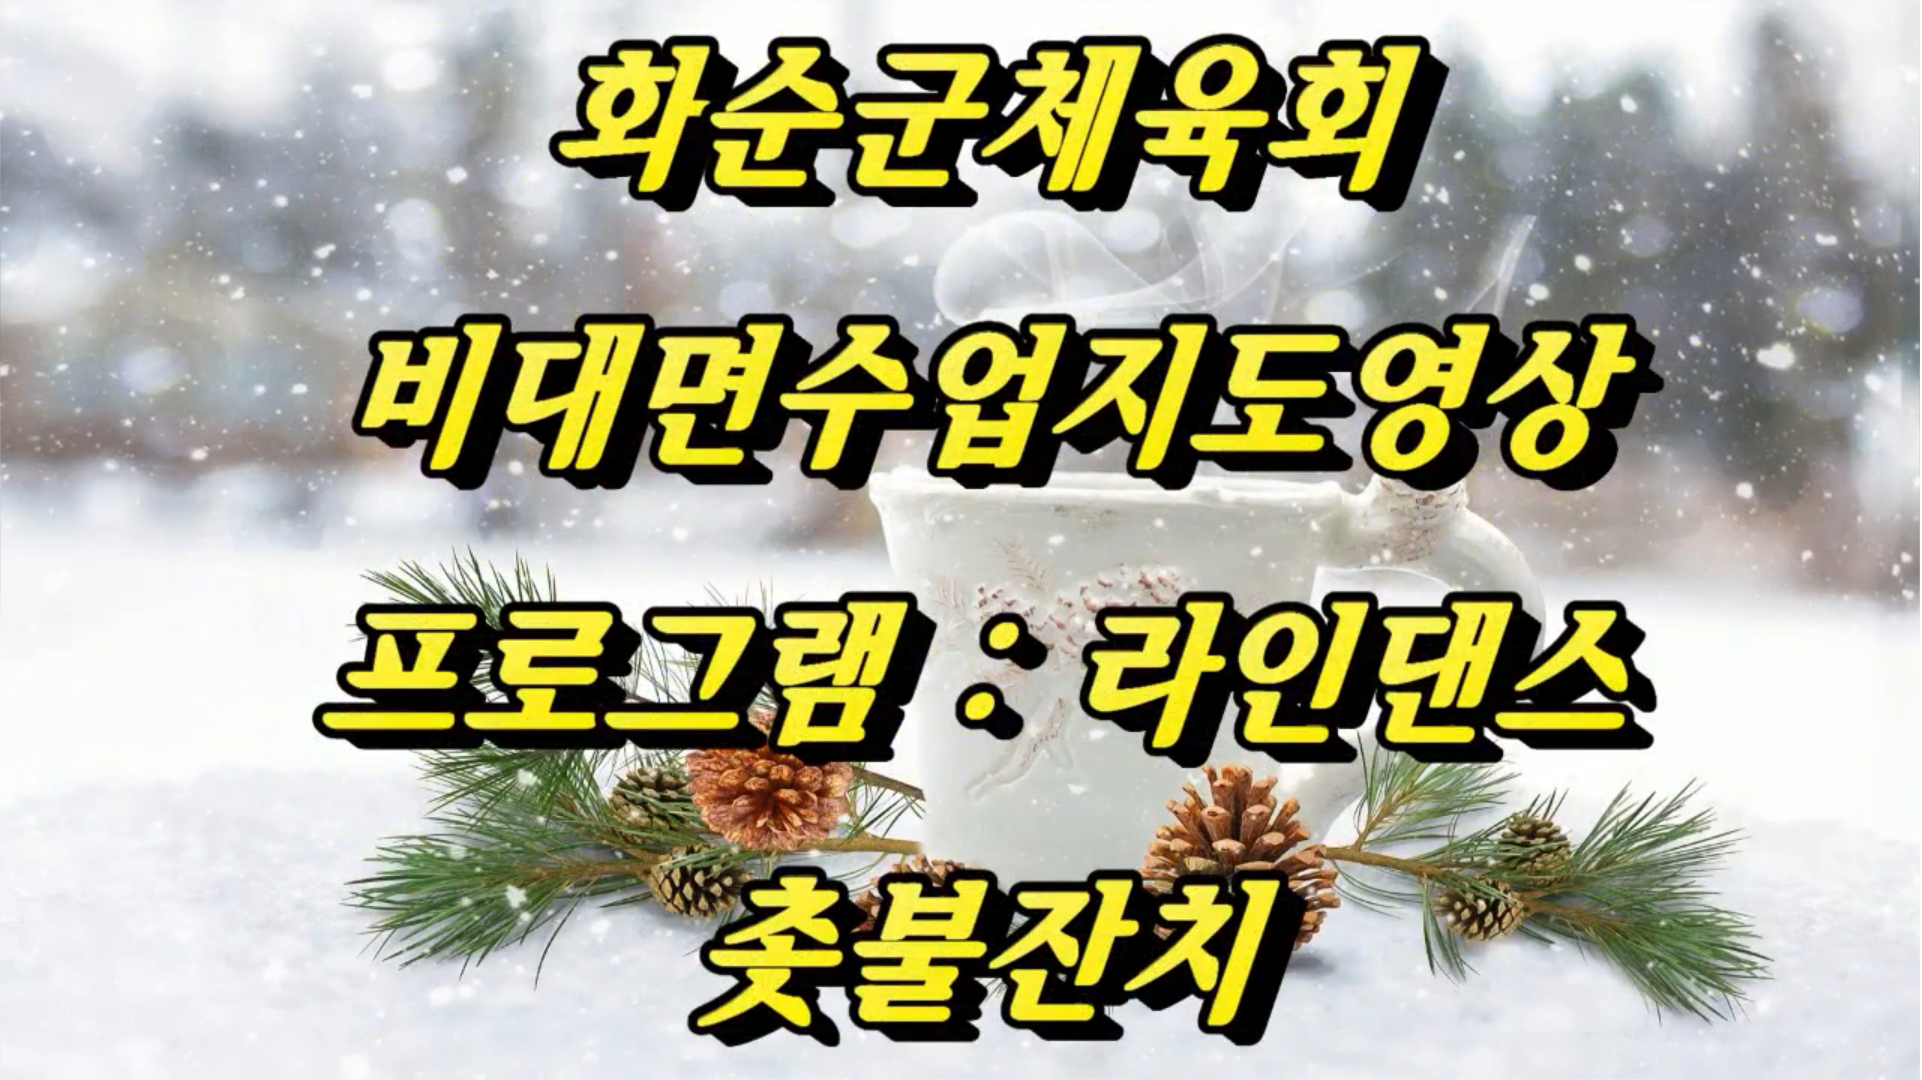 12월화순군체육회,라인댄스(촛불잔치)